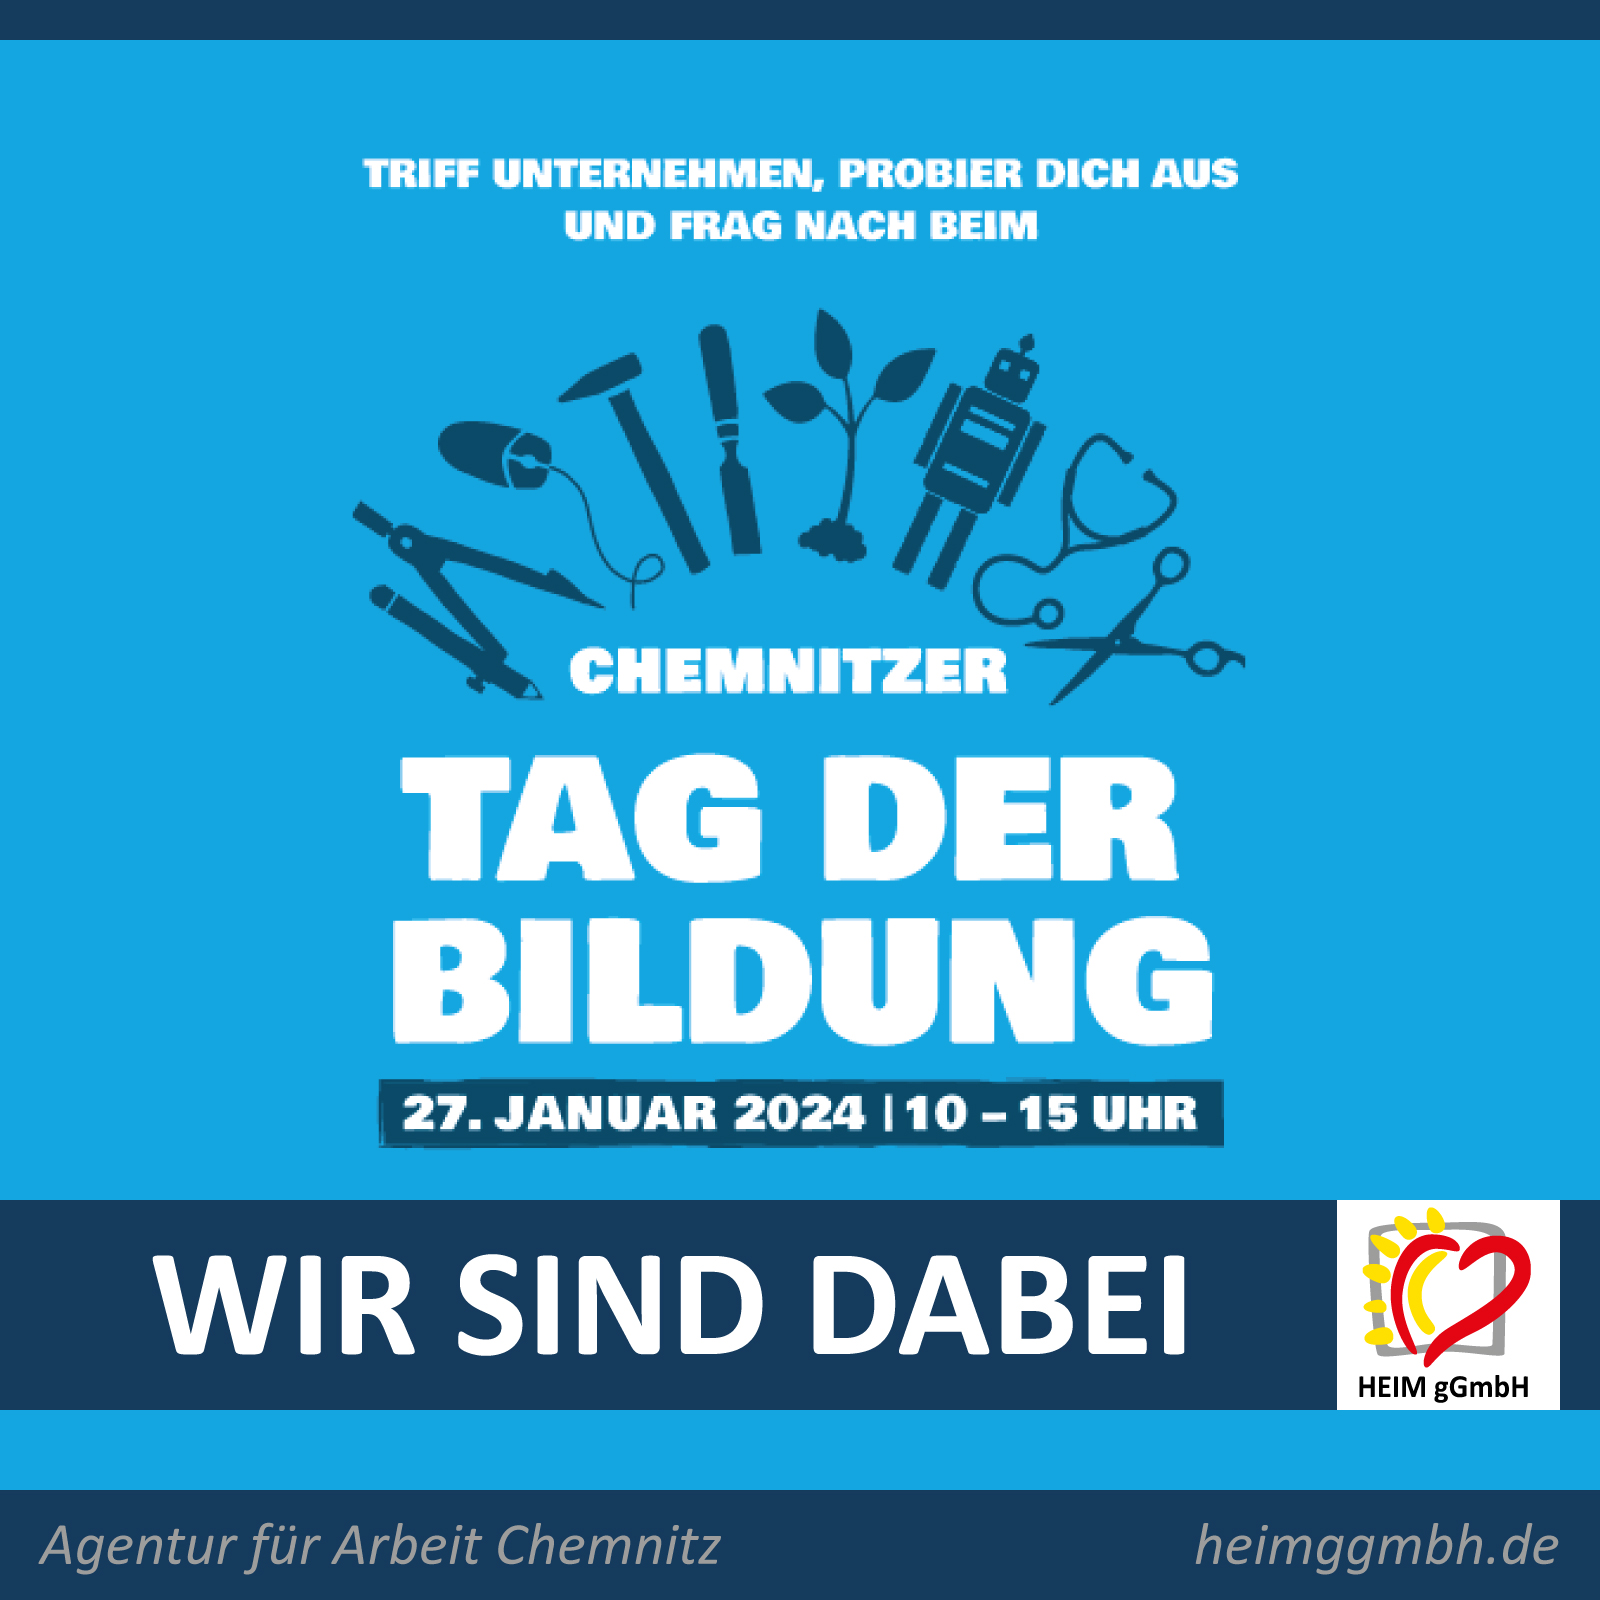 Das Team der HEIM gemeinnützigen GmbH steht zum Tag der Bildung am 27. Januar 2024 Rede und Antwort in der Agentur für Arbeit Chemnitz